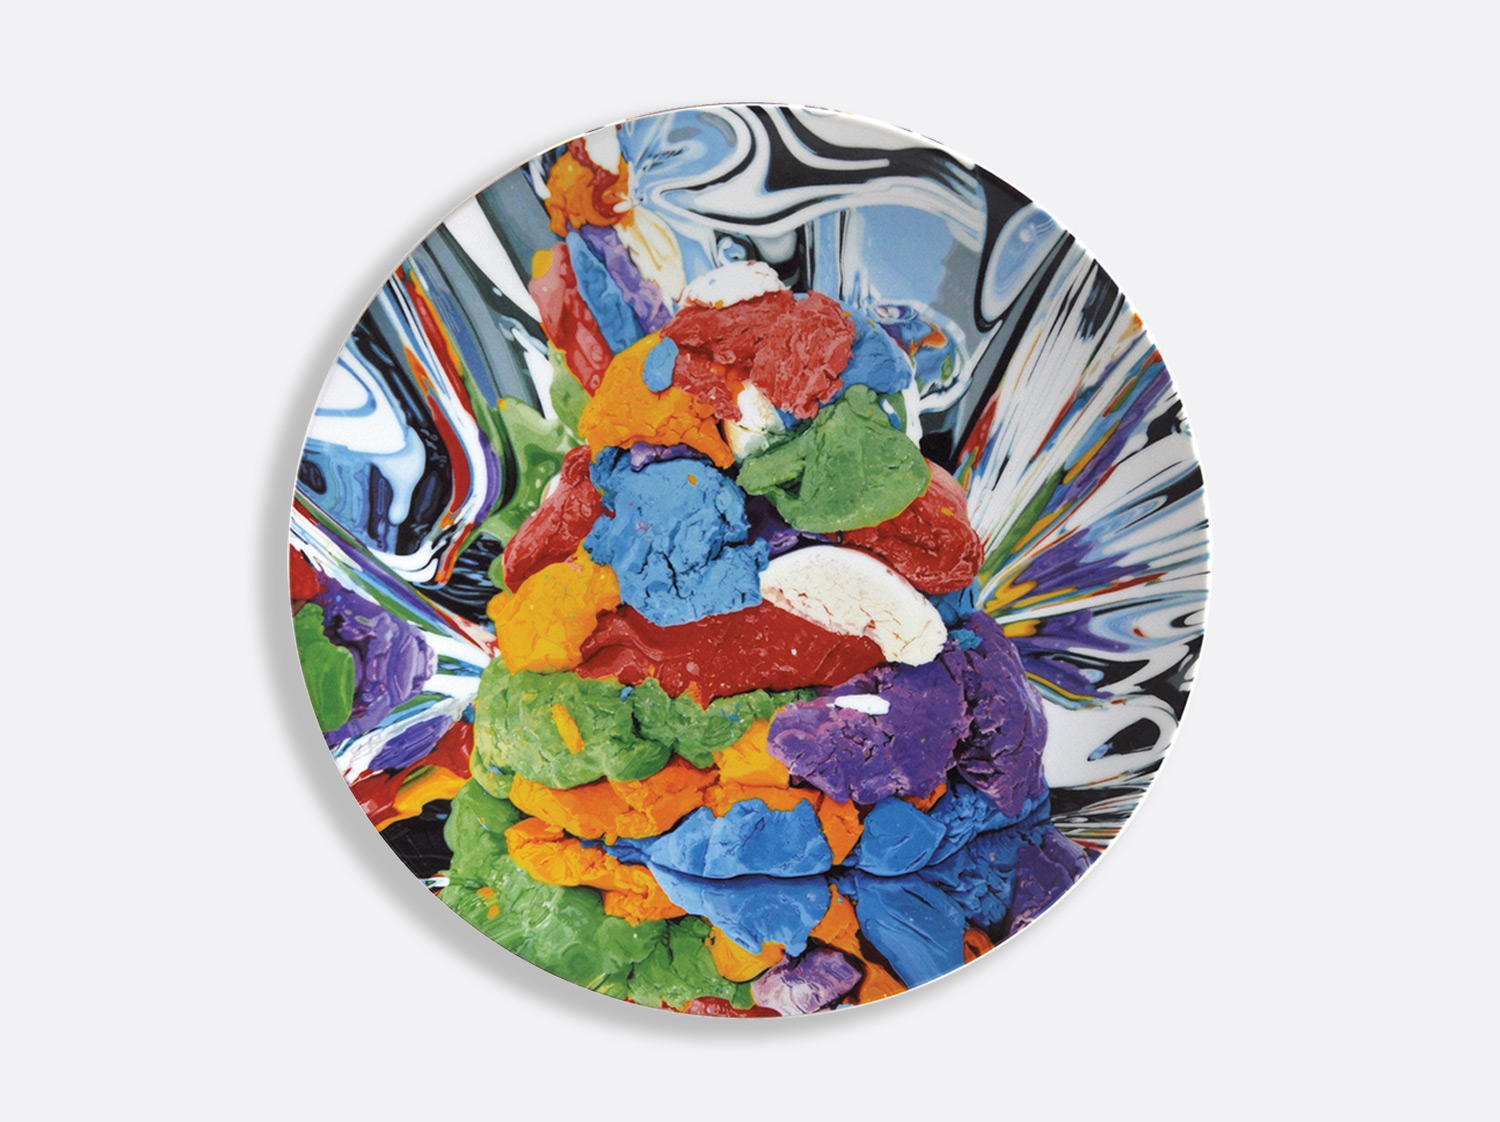 Coupe 31 cm en porcelaine de la collection Play-doh Bernardaud